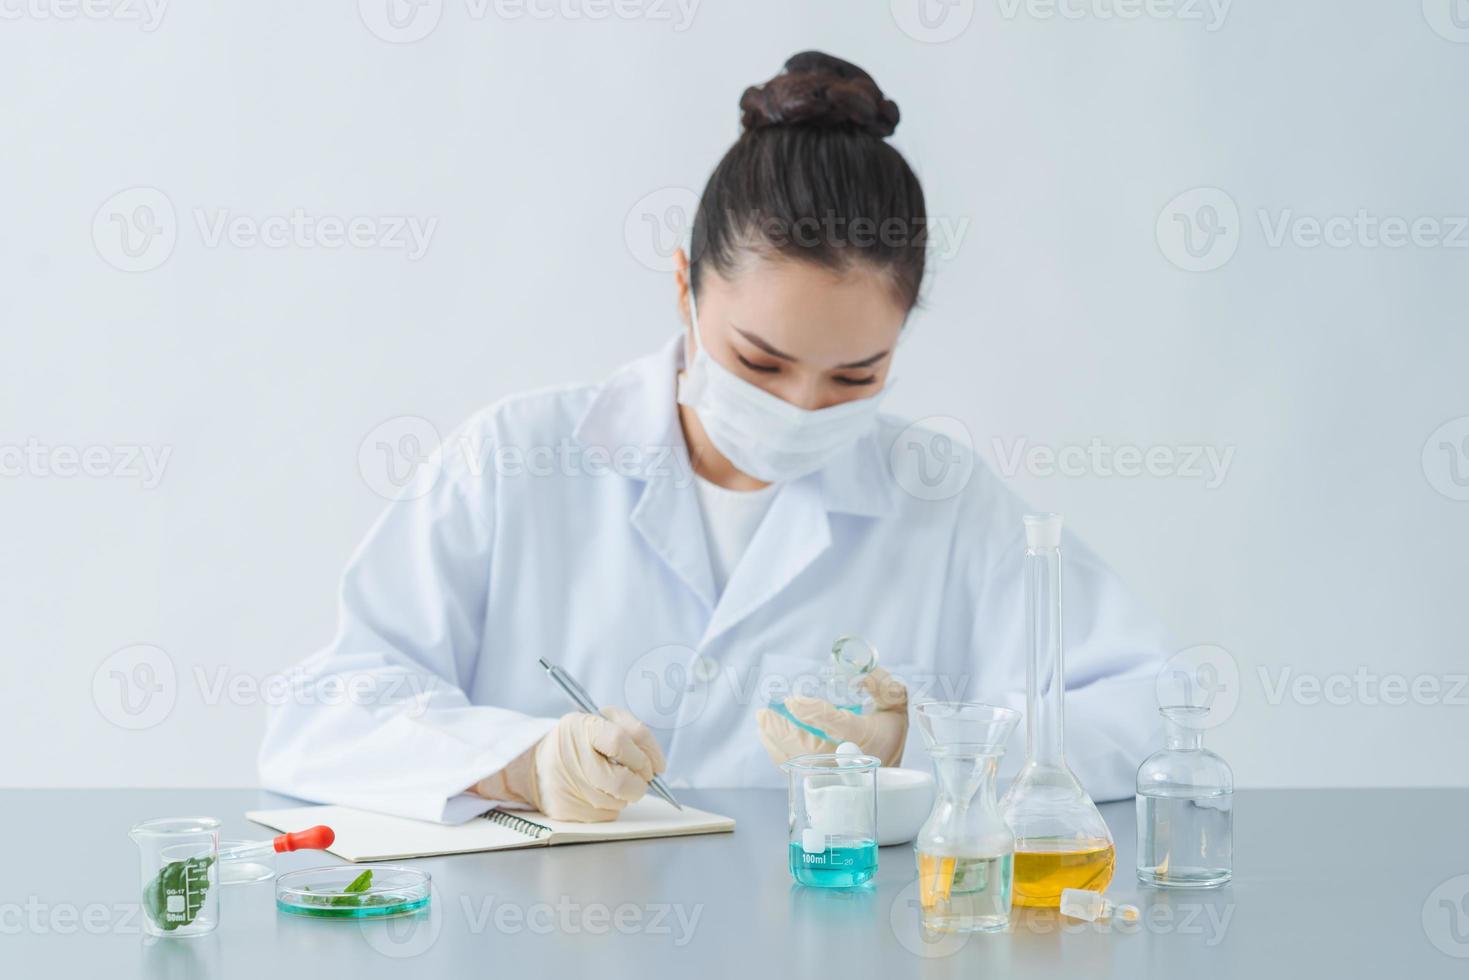 Médicament. technicien de laboratoire faisant une expérience de chimie photo